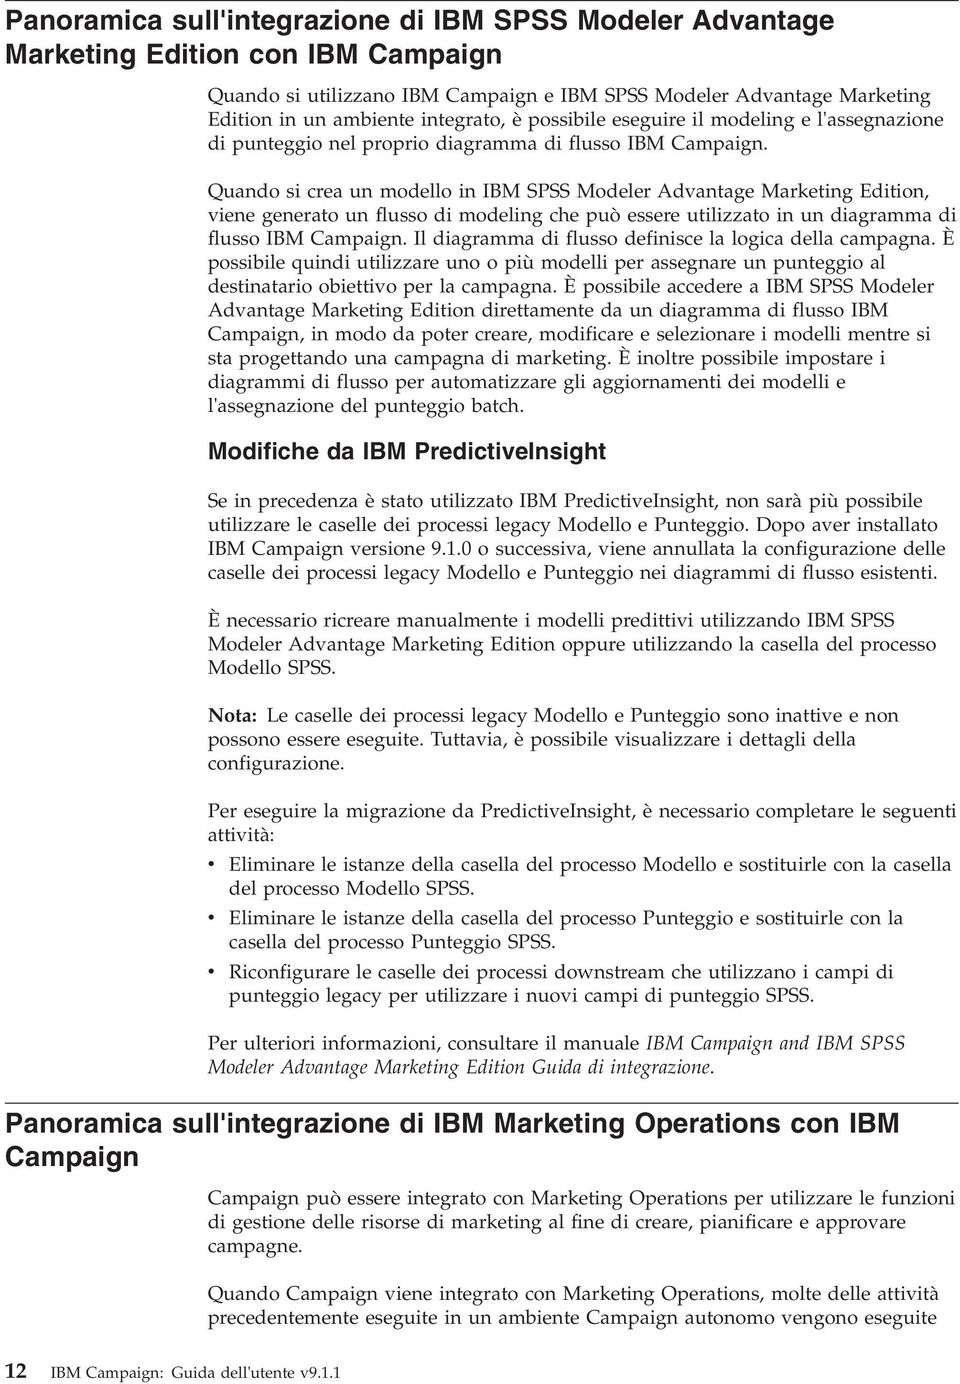 Quando si crea un modello in IBM SPSS Modeler Adantage Marketing Edition, iene generato un flusso di modeling che può essere utilizzato in un diagramma di flusso IBM Campaign.